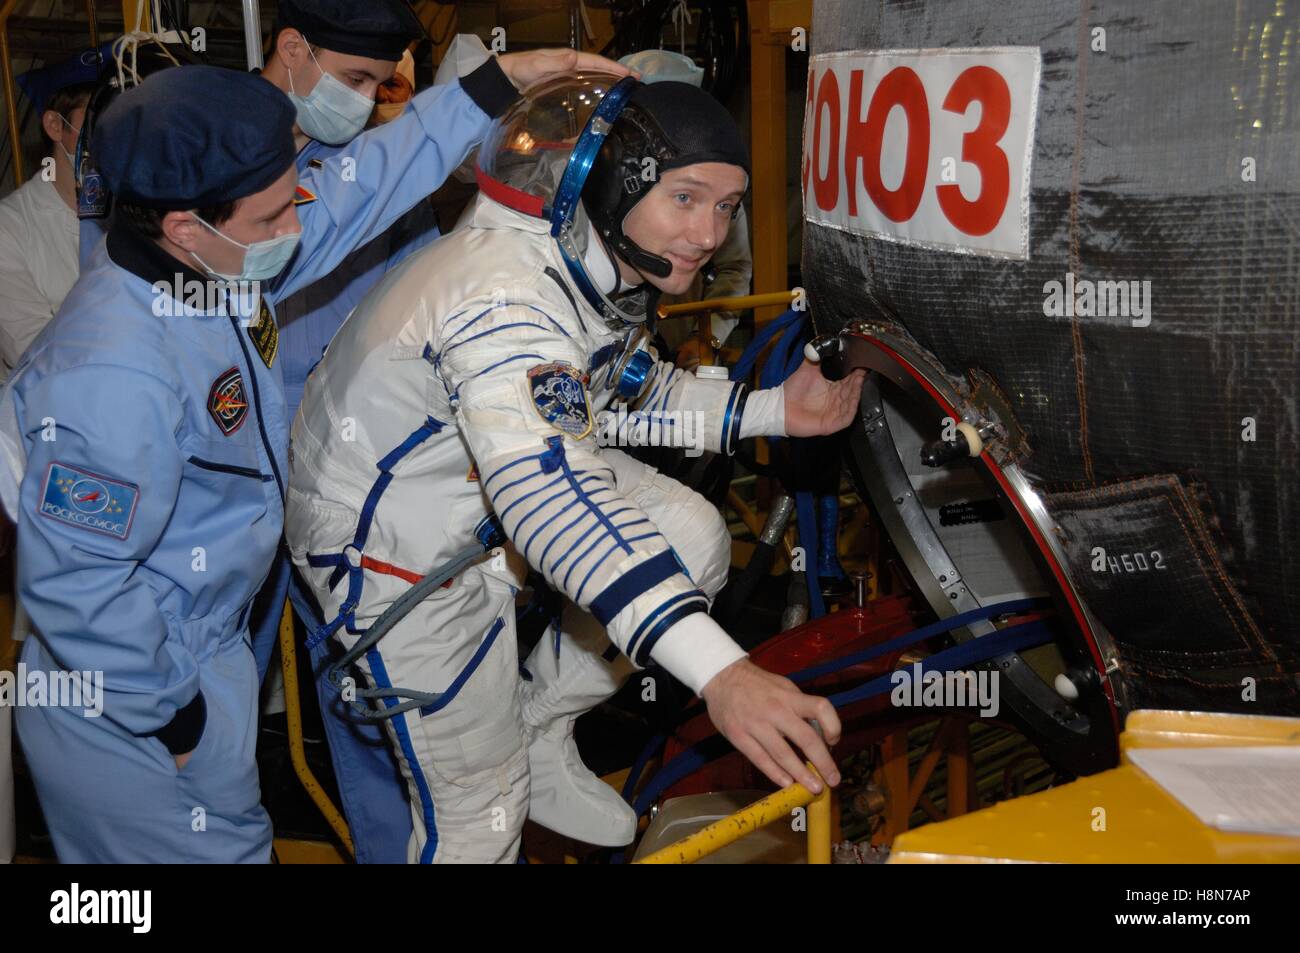 NASA internationale Raumstation Expedition 50-51 erstklassige Crew Mitglied Astronaut Thomas Pesquet von der European Space Agency besteigt das Raumschiff Sojus MS-03 während einer Fit Check-Generalprobe in Baikonur Kosmodrom Integration Anlage 2. November 2016 in Baikonur, Kasachstan. Stockfoto